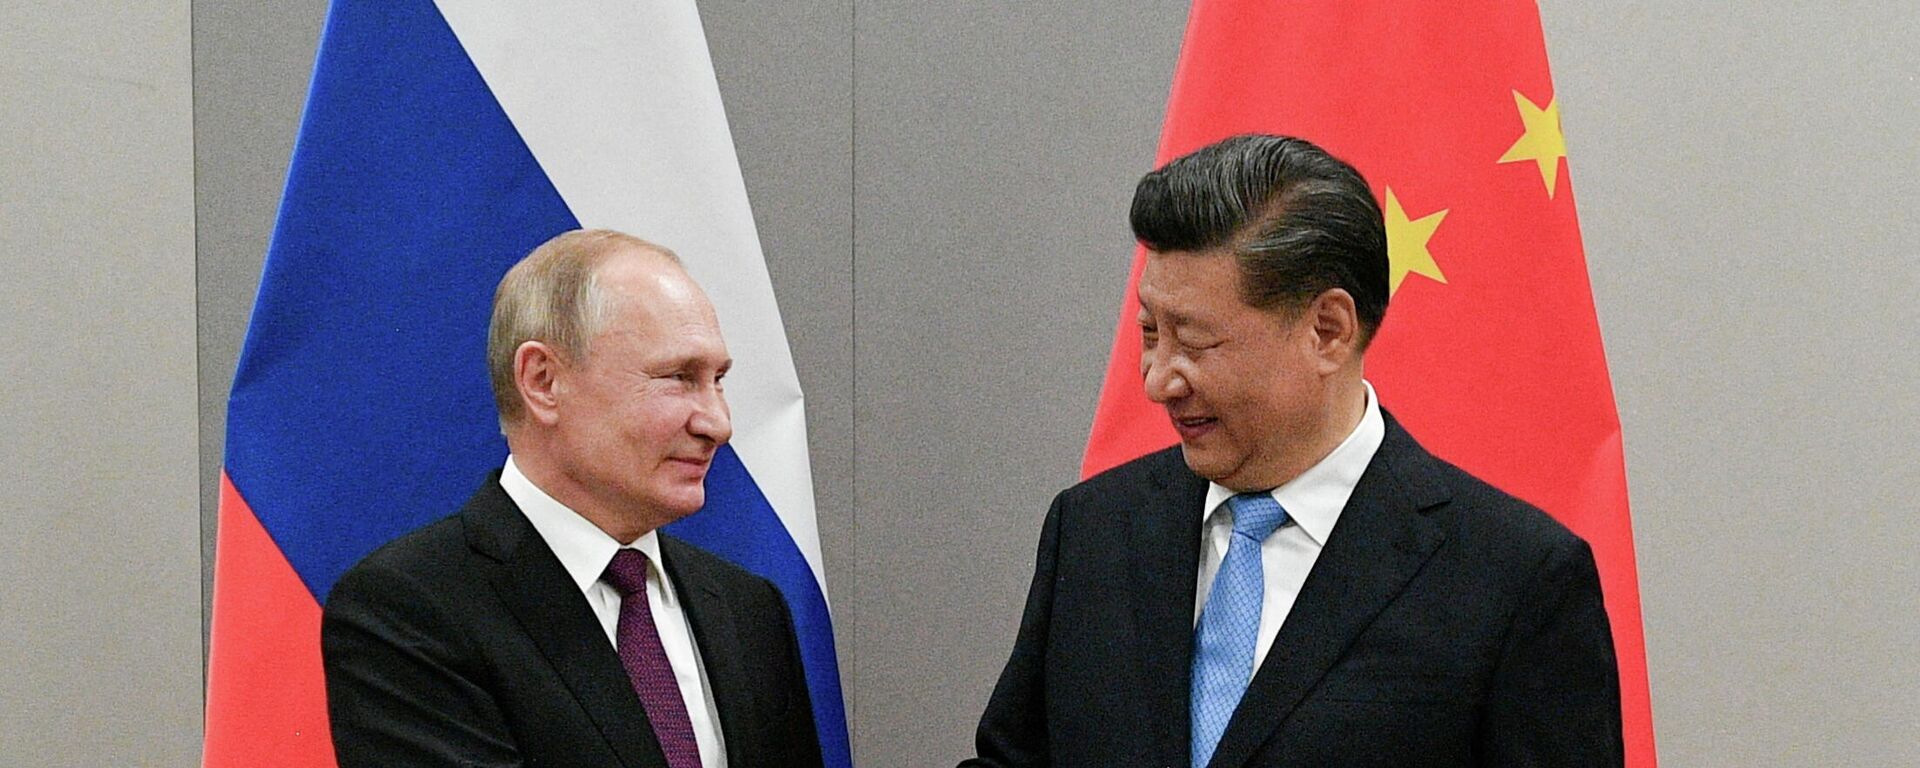 El presidente de Rusia y el presidente de China - Sputnik Mundo, 1920, 28.12.2021